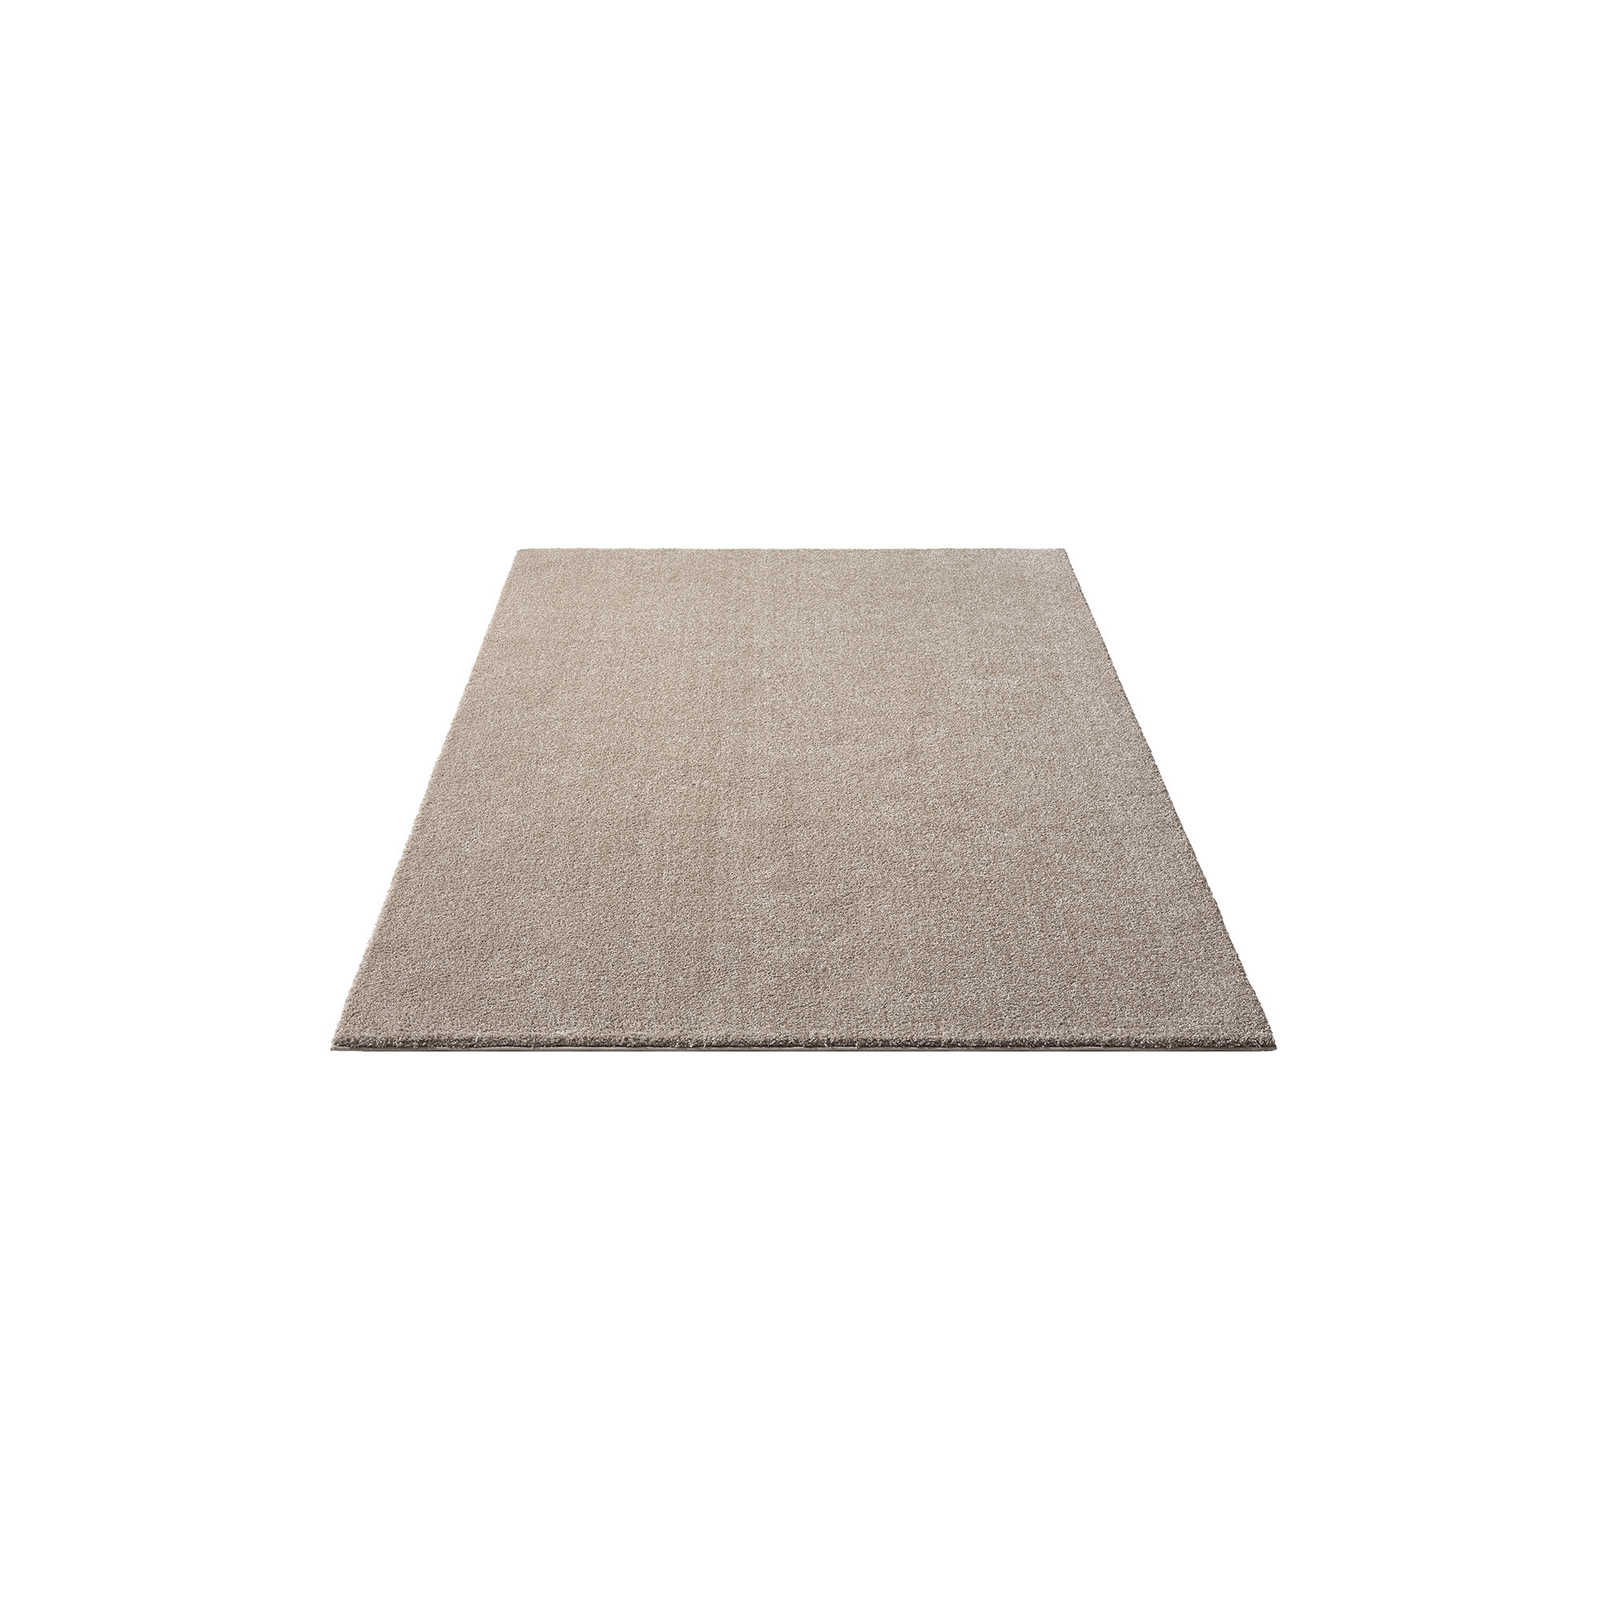 Sanfter Kurzflor Teppich in Beige – 170 x 120 cm
